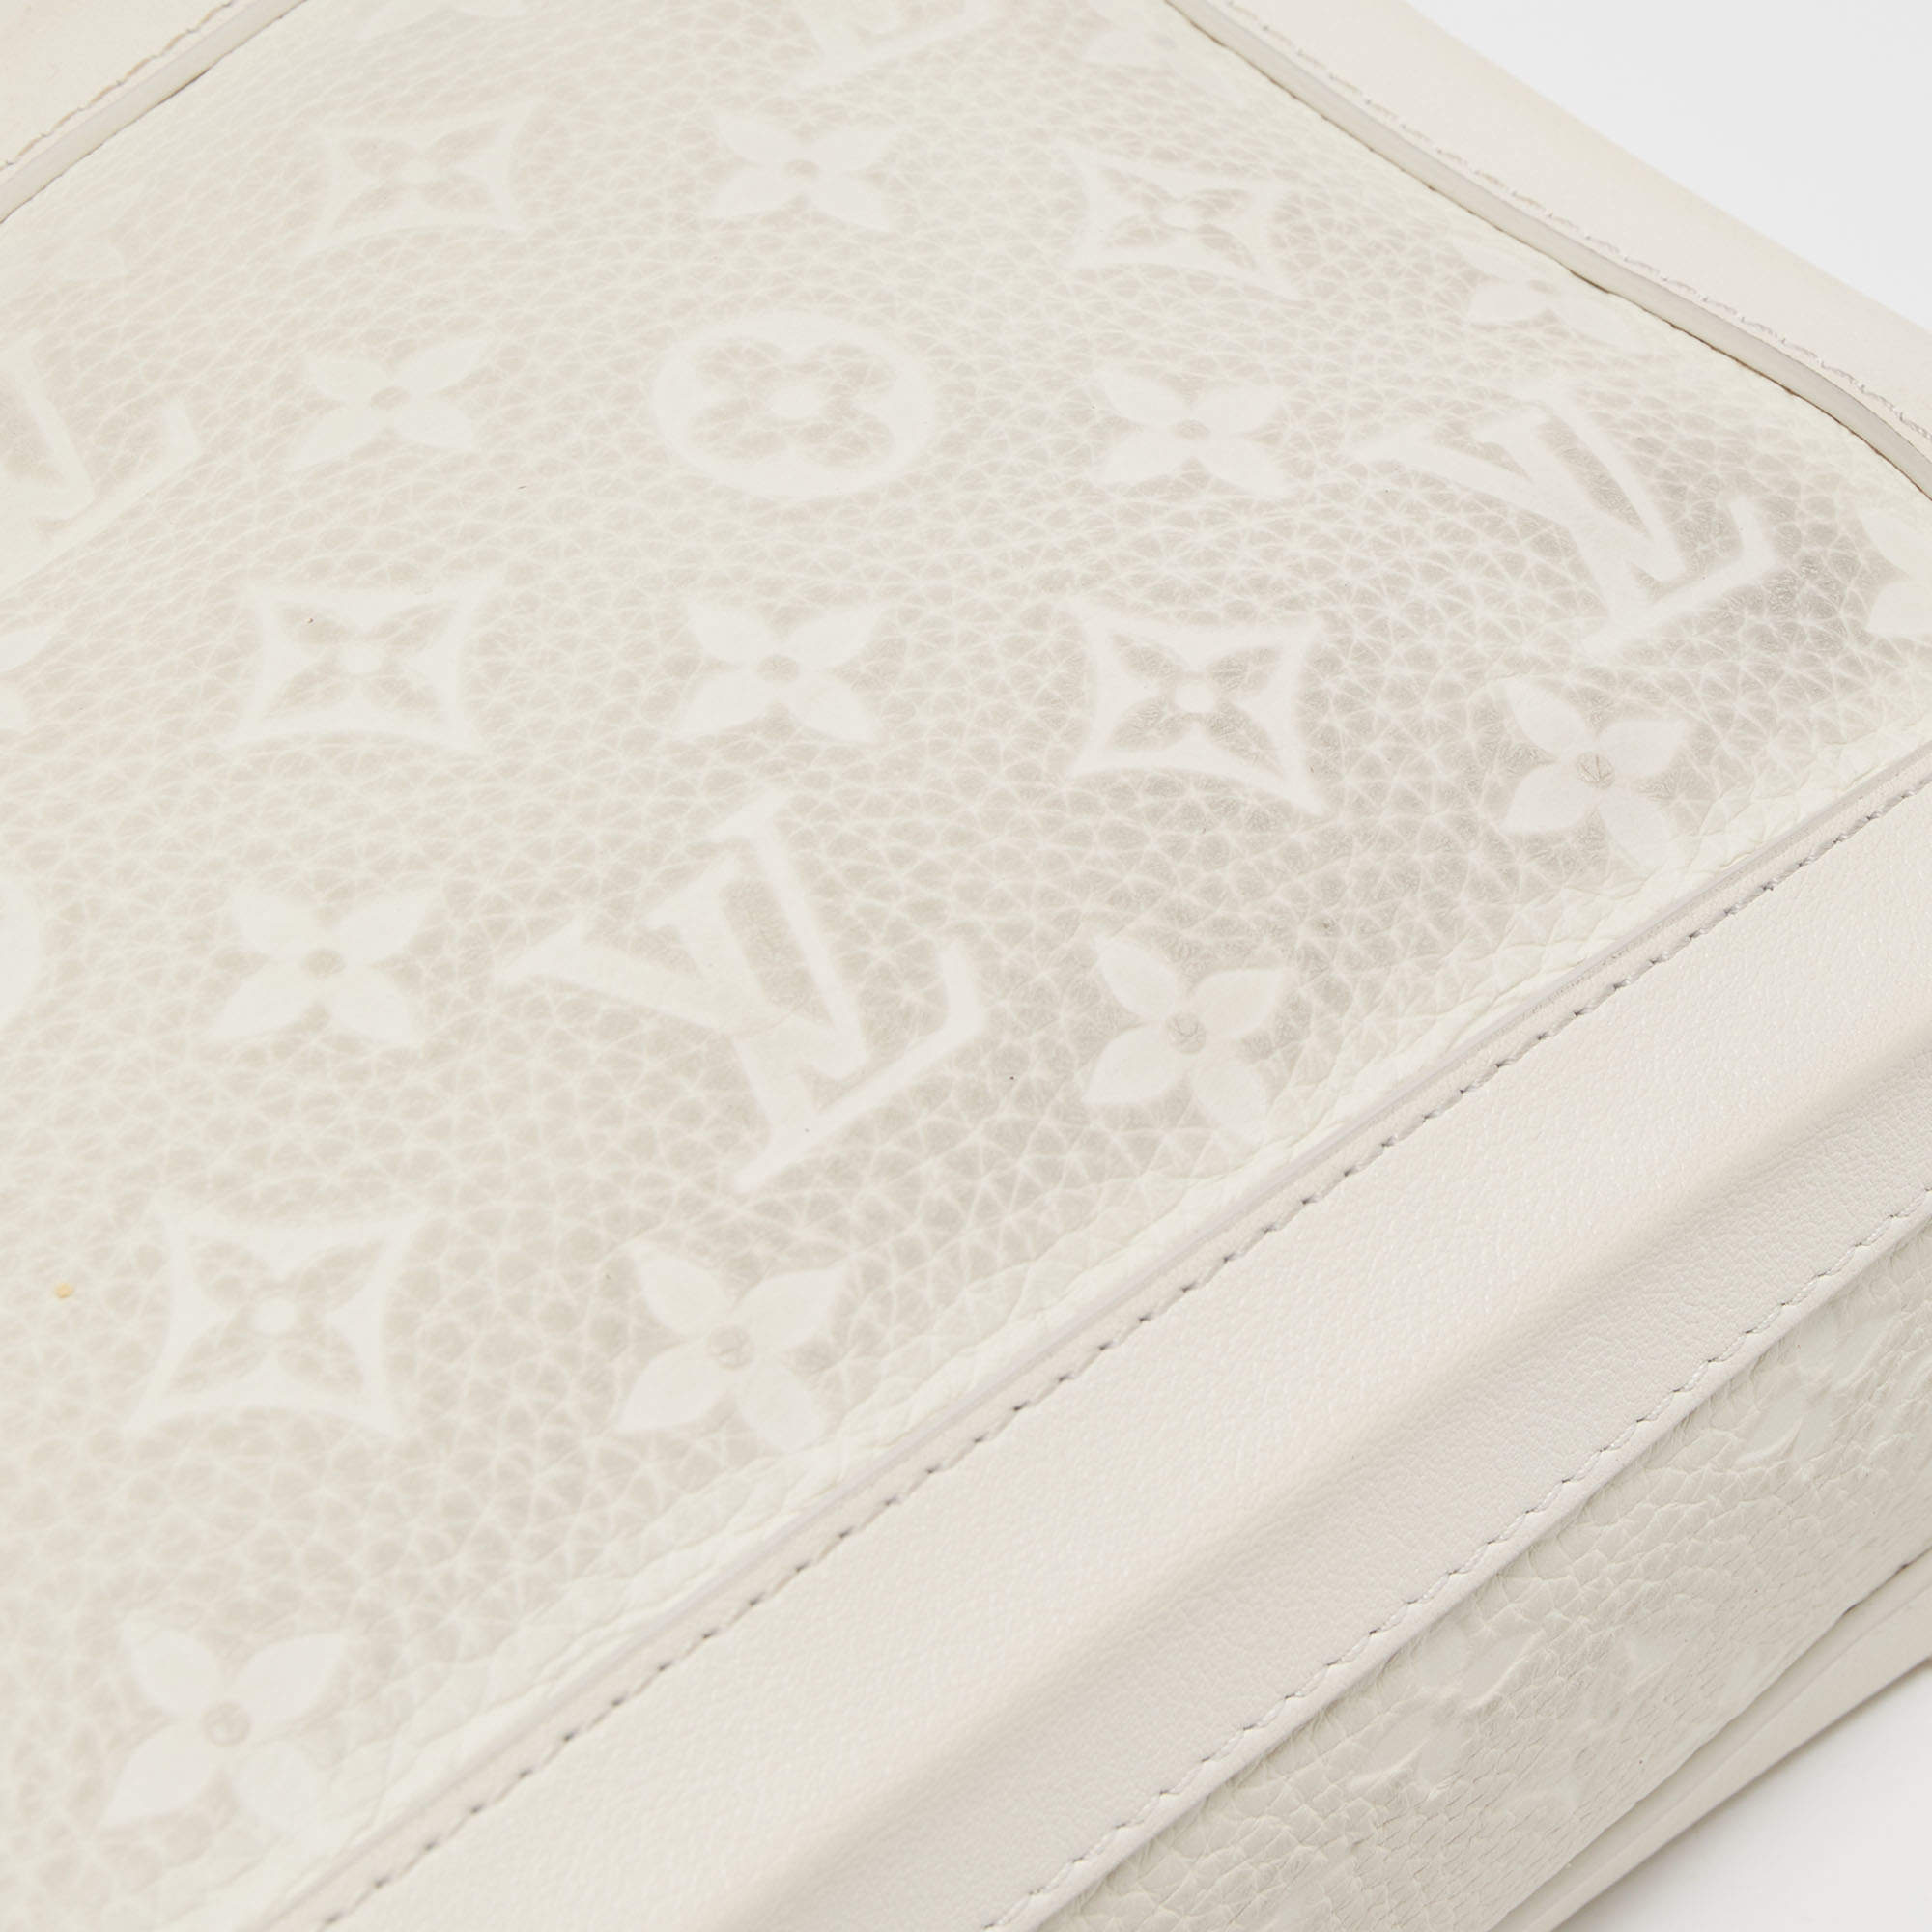 Louis Vuitton Monogram Canvas Legacy Soft Trunk Bag Louis Vuitton | The  Luxury Closet